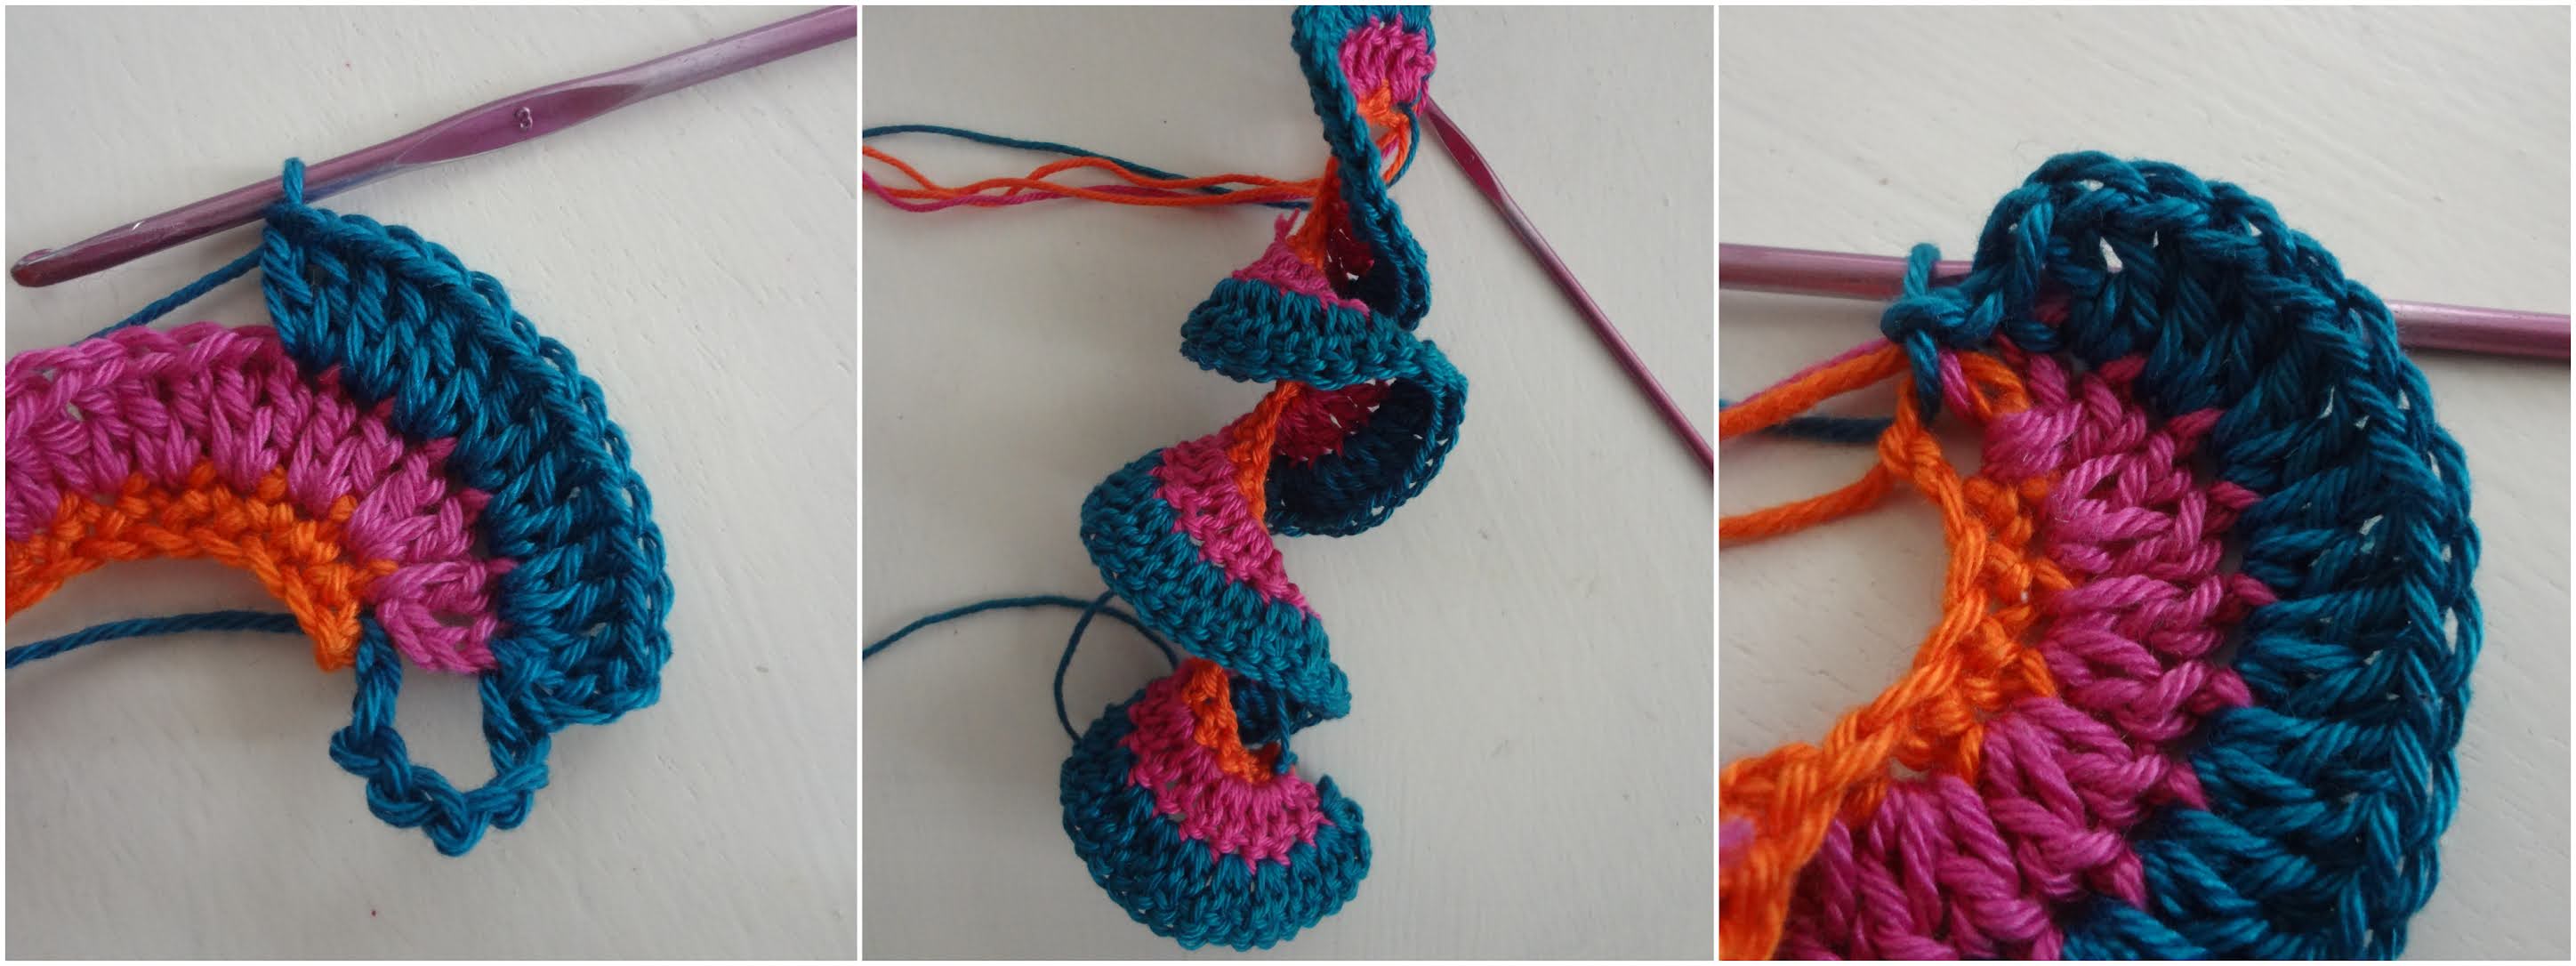 Free Crochet Pattern Wind Spinner : Free Crochet Patterns